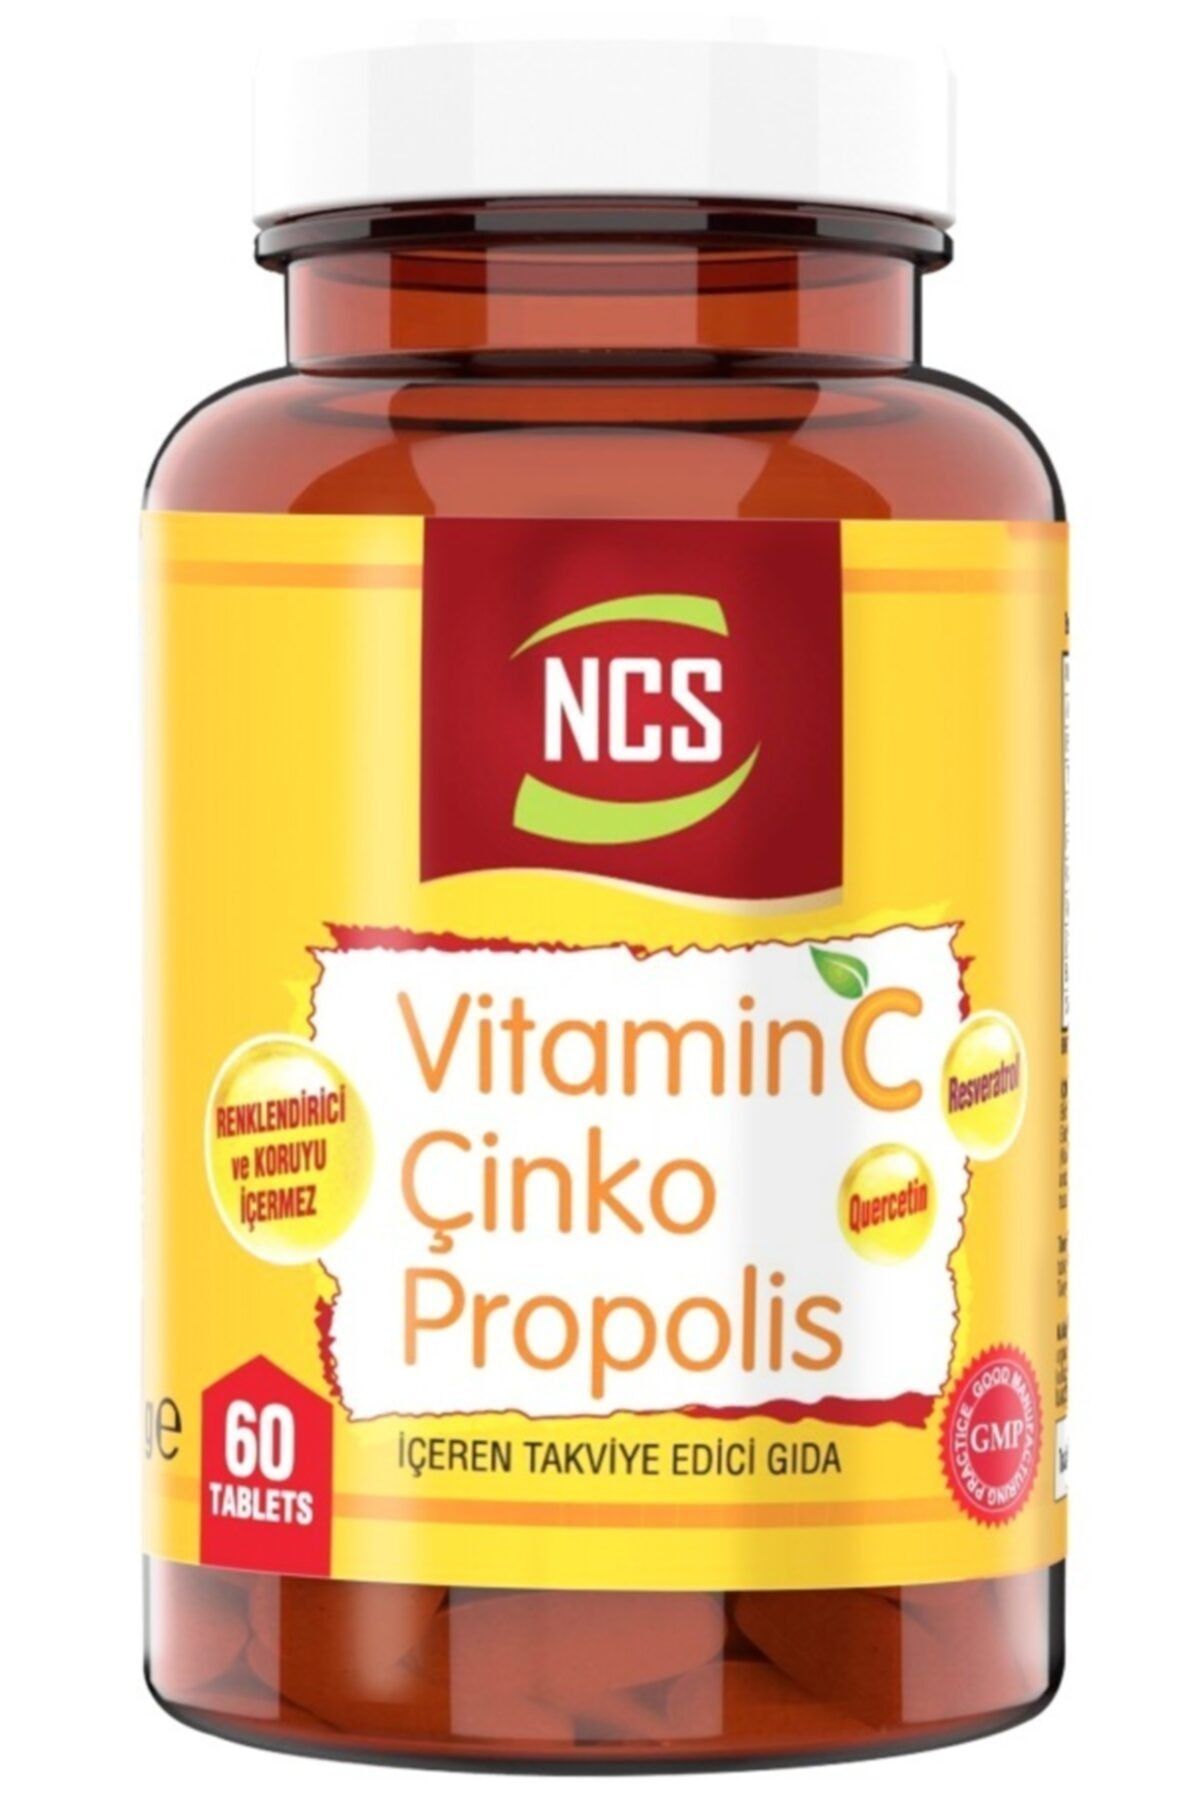 Ncs Vitamin C Çinko Propolis 60 Tablet Vitamin D Quercetin Resveratrol